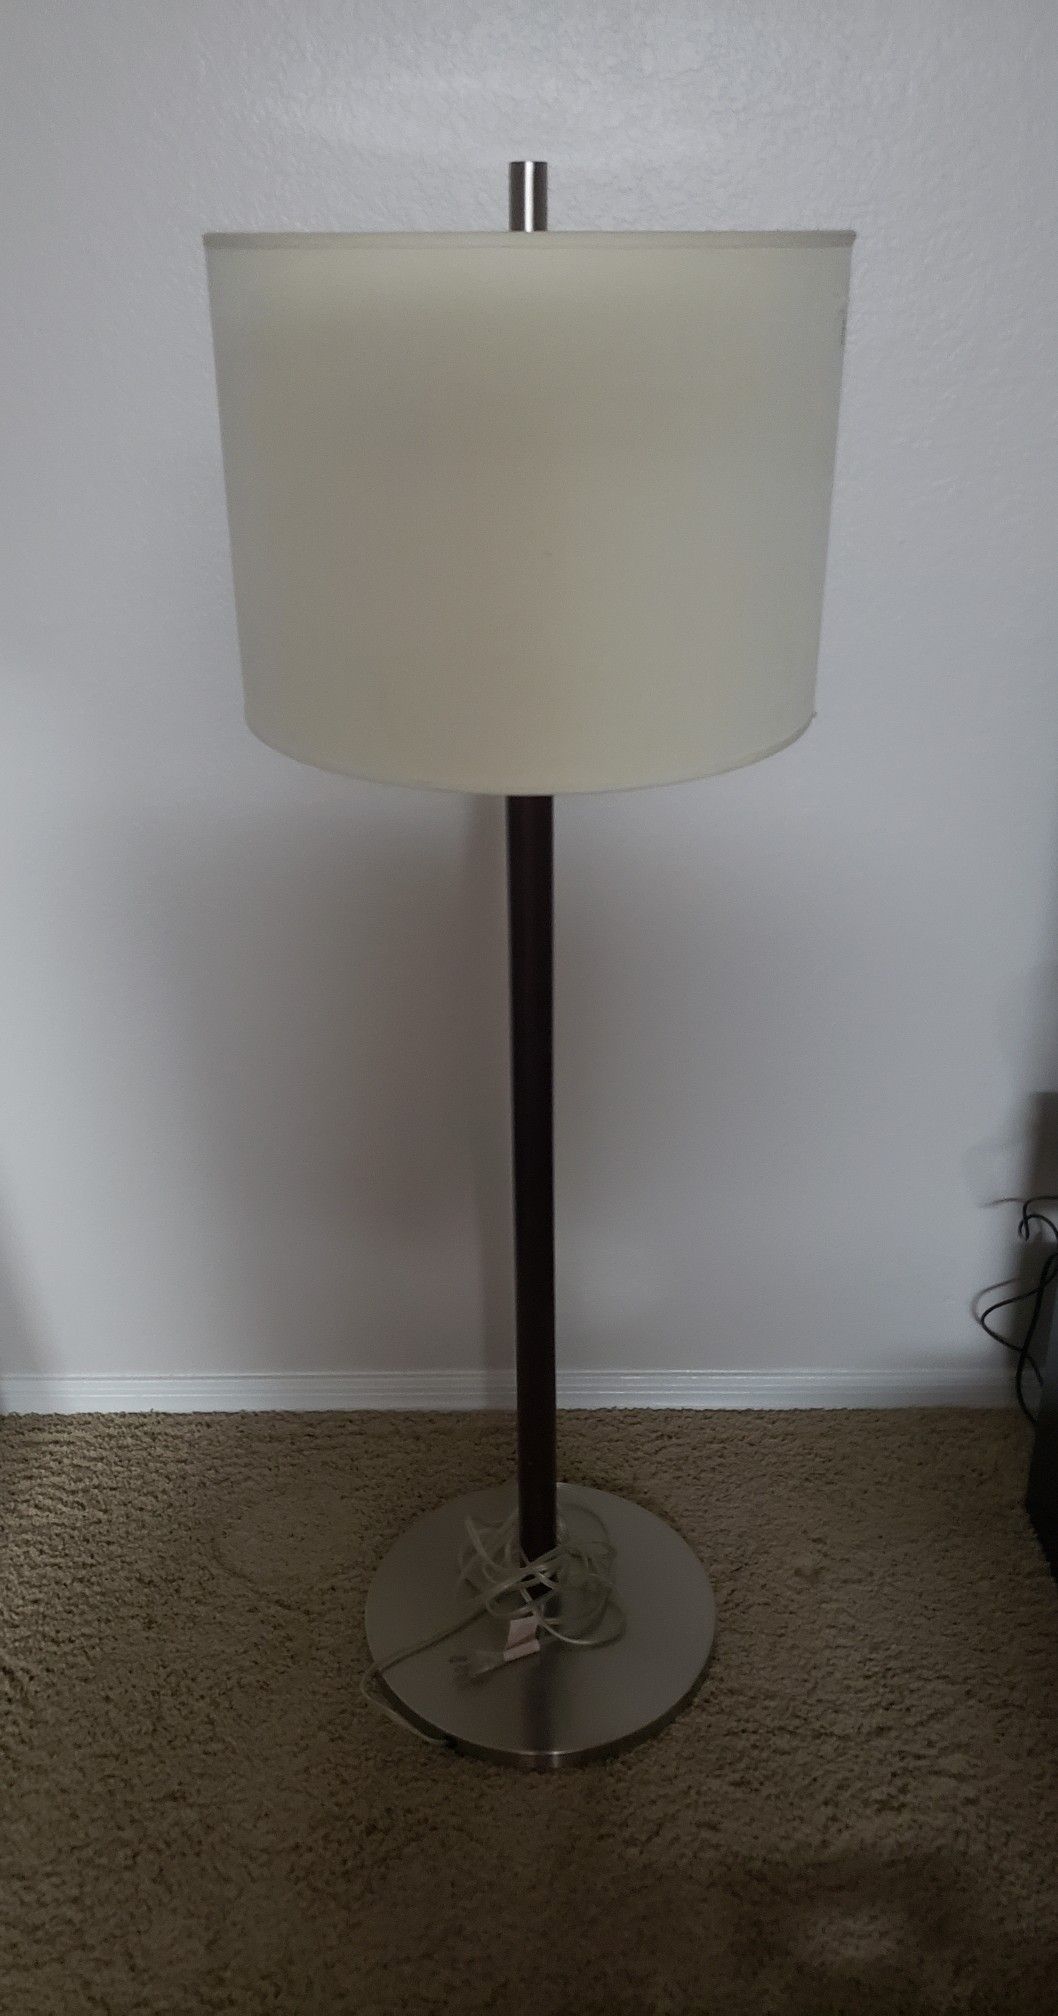 Lovely (heavy/sturdy) Floor Lamp $20 OBO